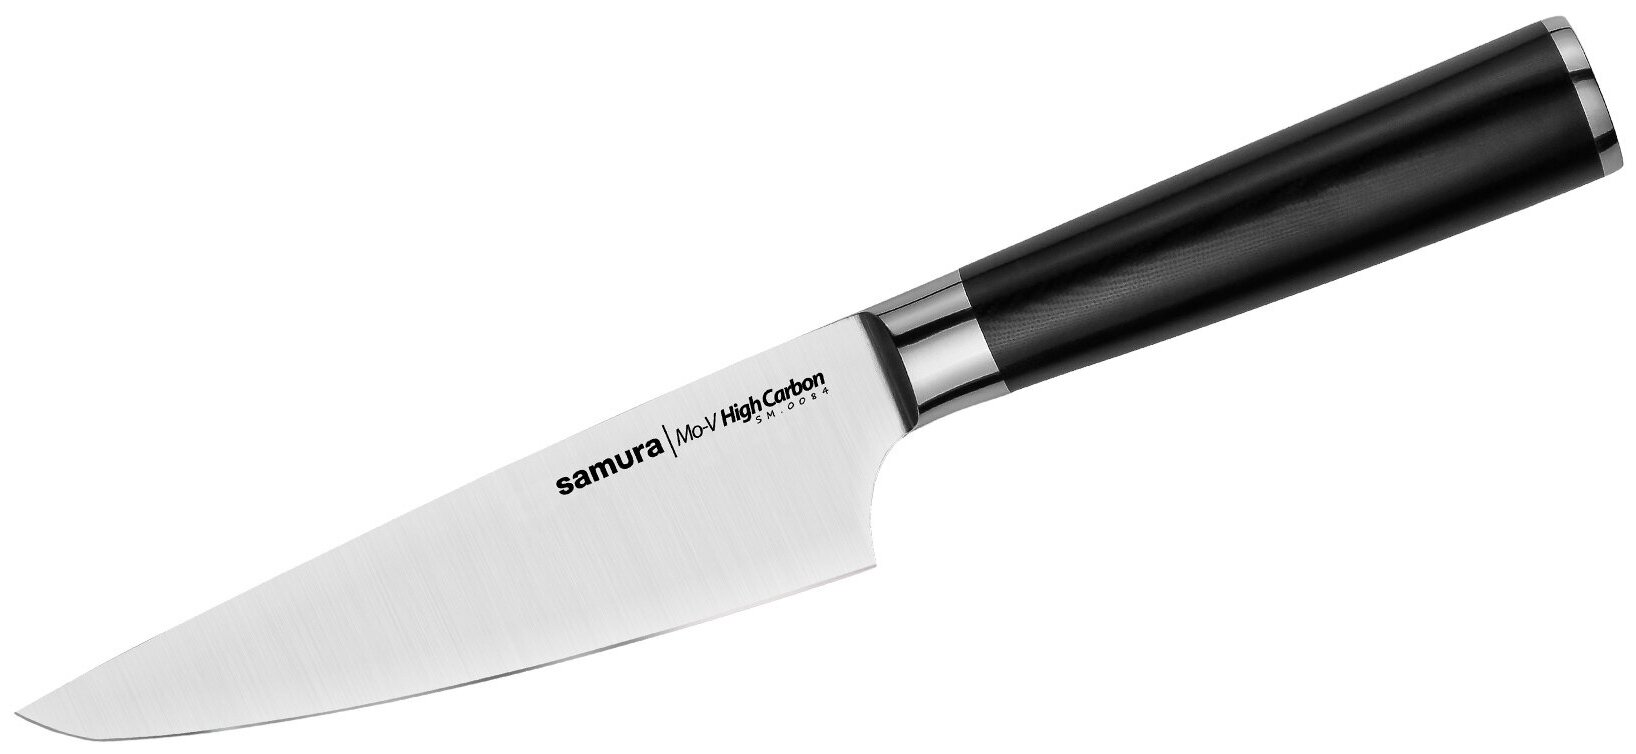 Шеф нож для нарезки мяса, рыбы, овощей и фруктов / кухонный нож / поварской нож для кухни Samura Mo-V 150мм SM-0084